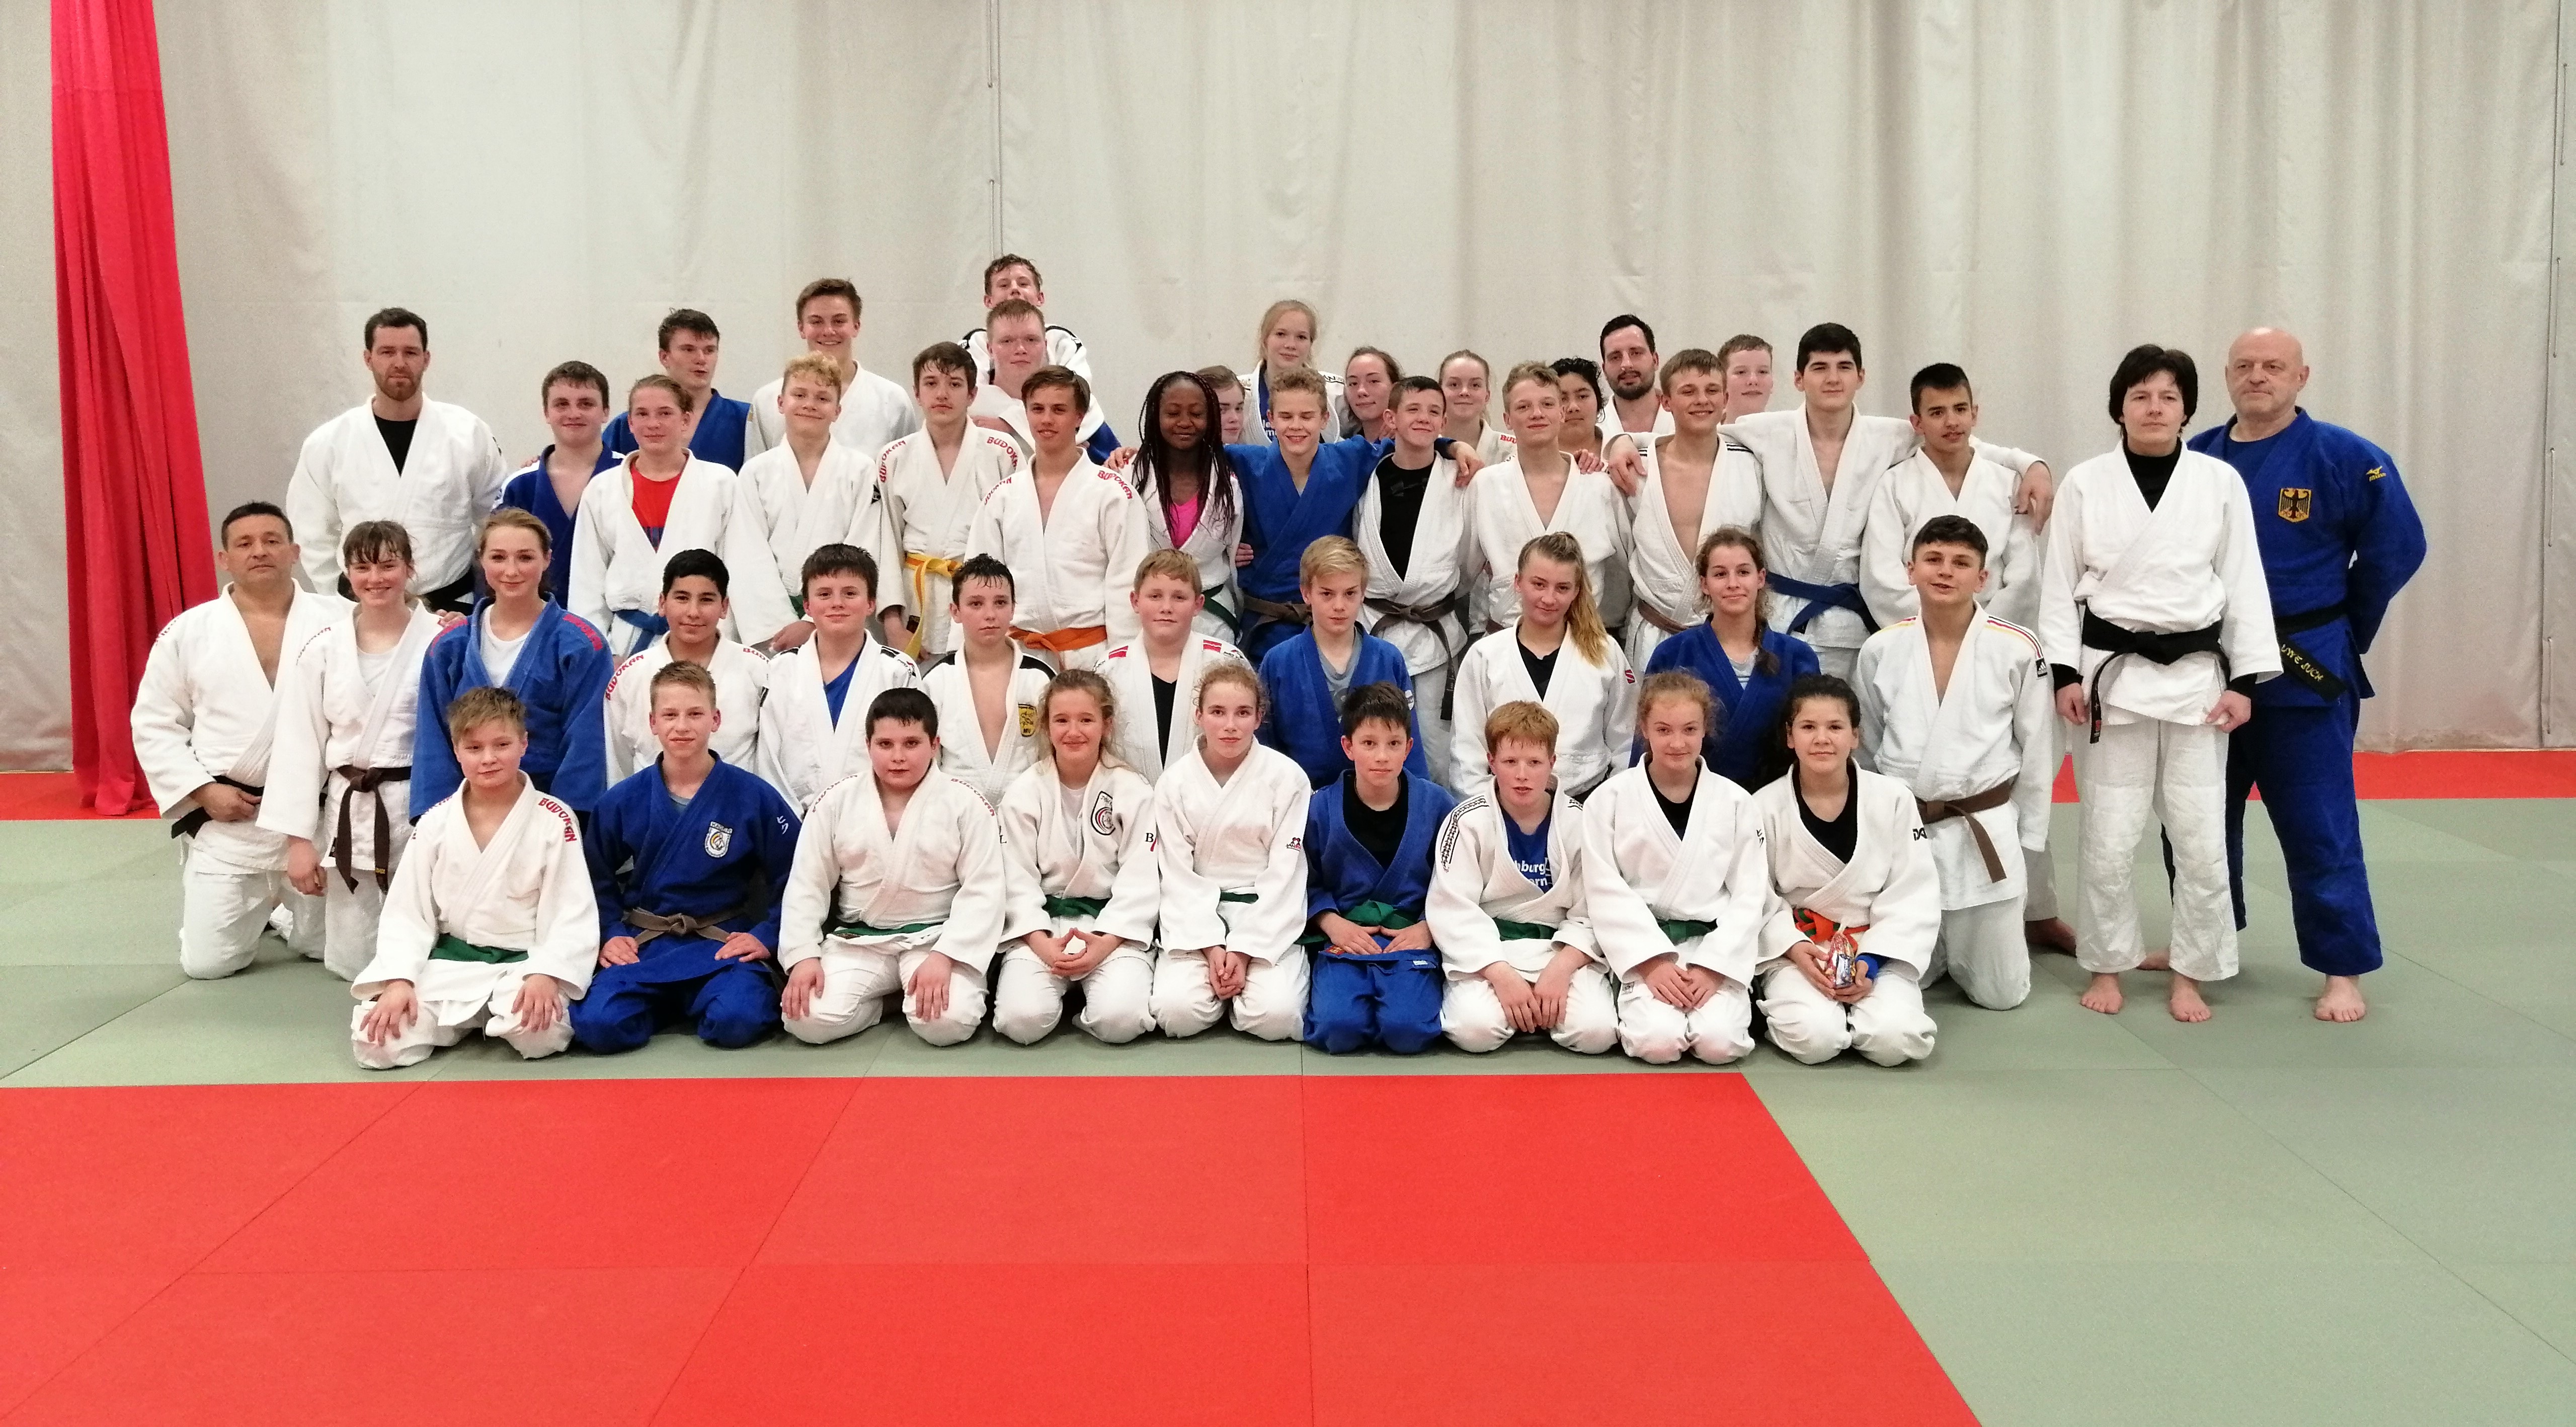 Jugendleitung auf Stippvisite beim Training zwischen Schwerinern und Lübecker Judoka